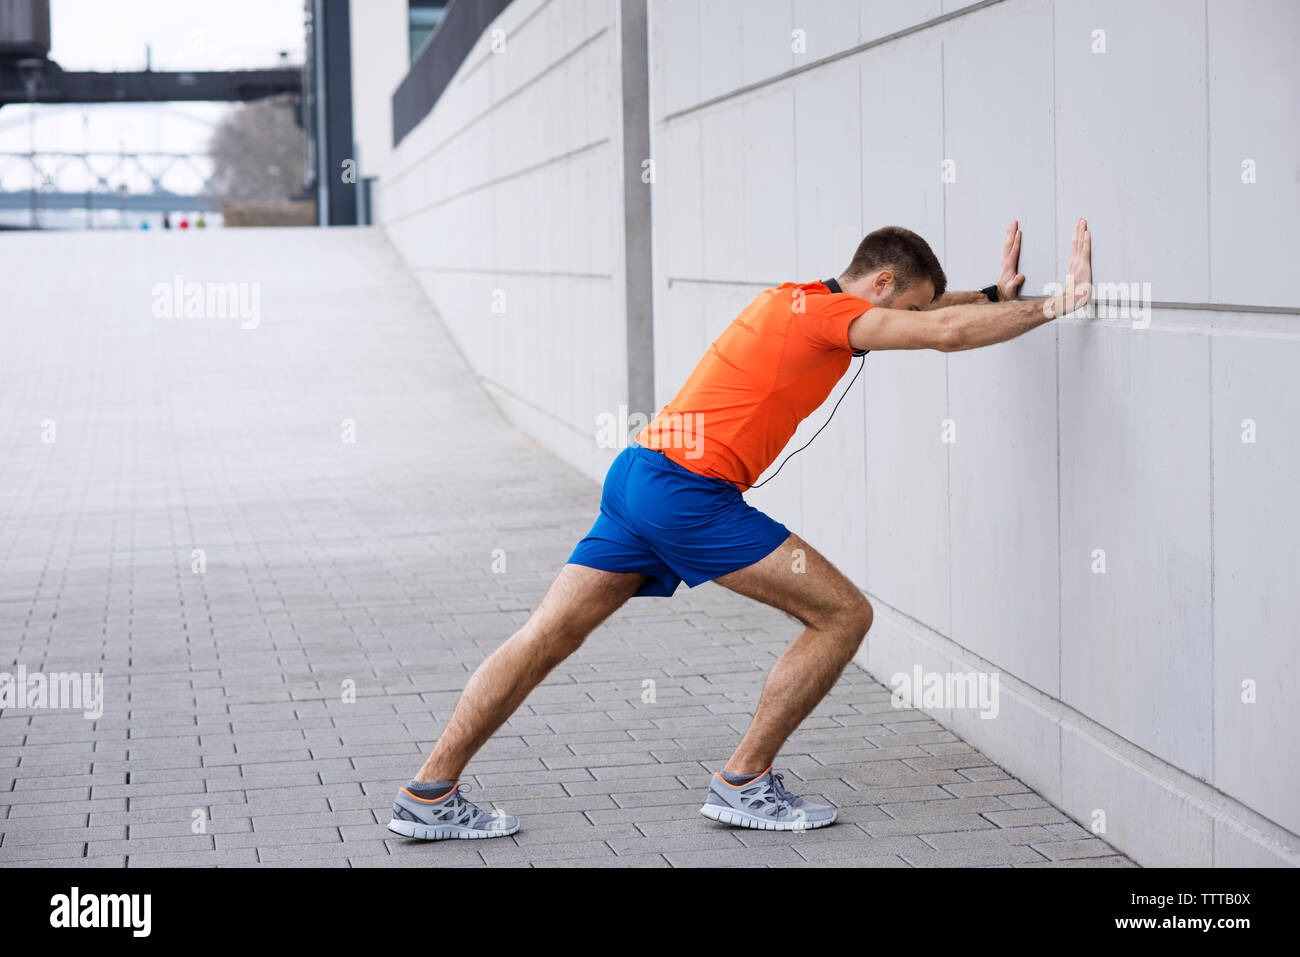 Vue latérale de l'athlète masculin leaning on wall tout en exerçant sur sentier Banque D'Images